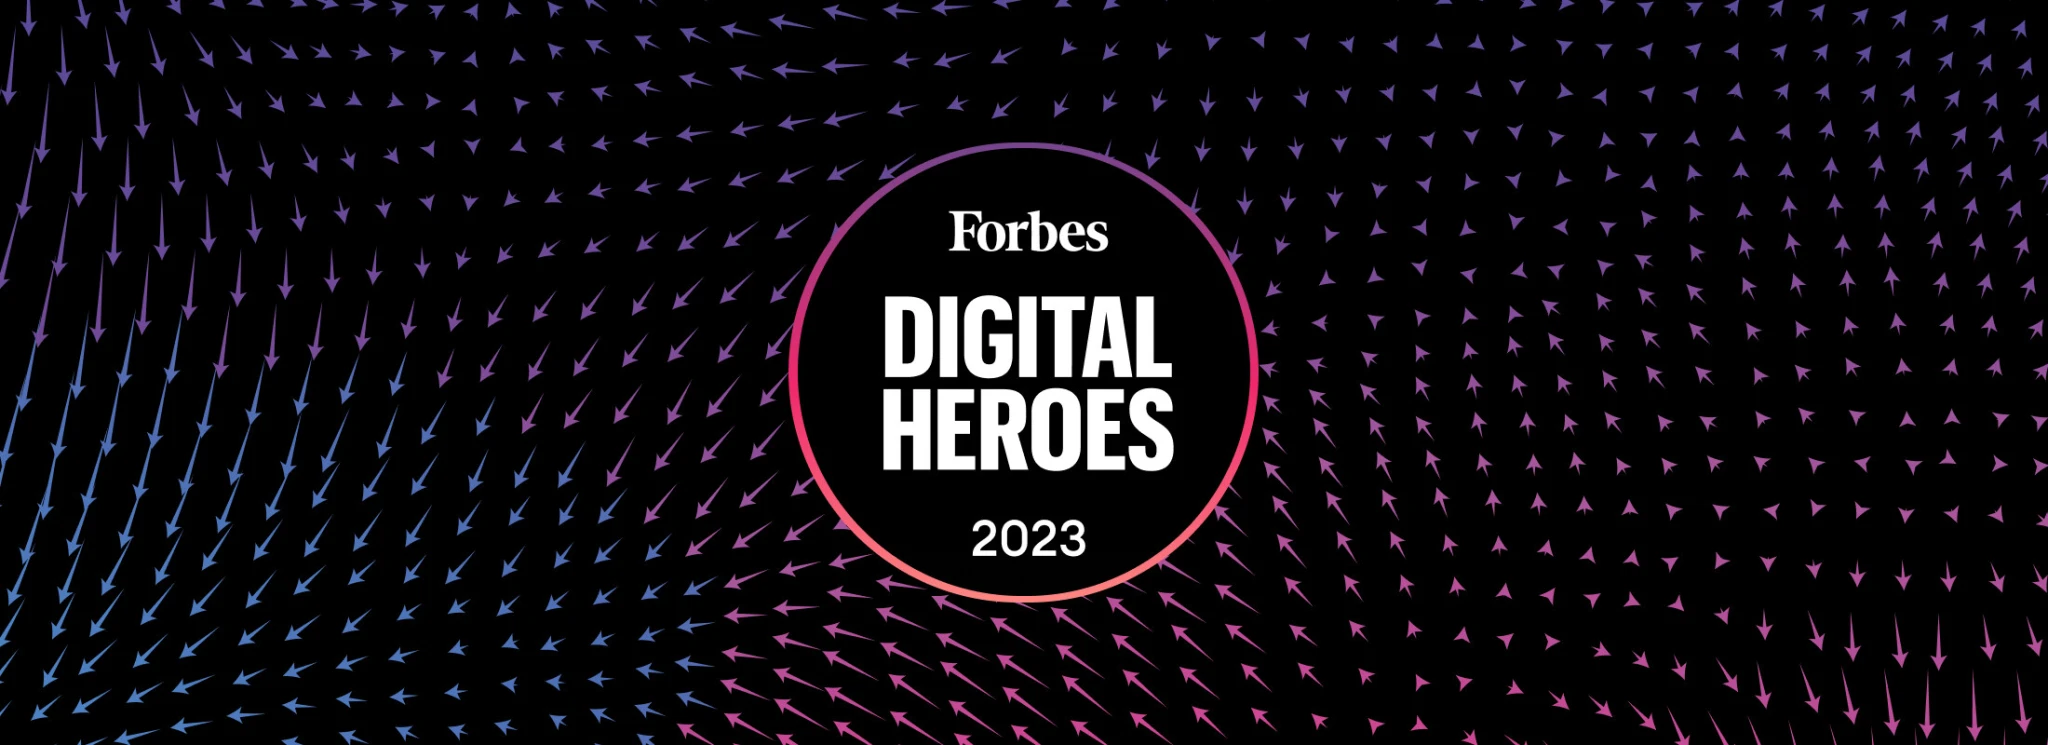 Digital Heroes 2023